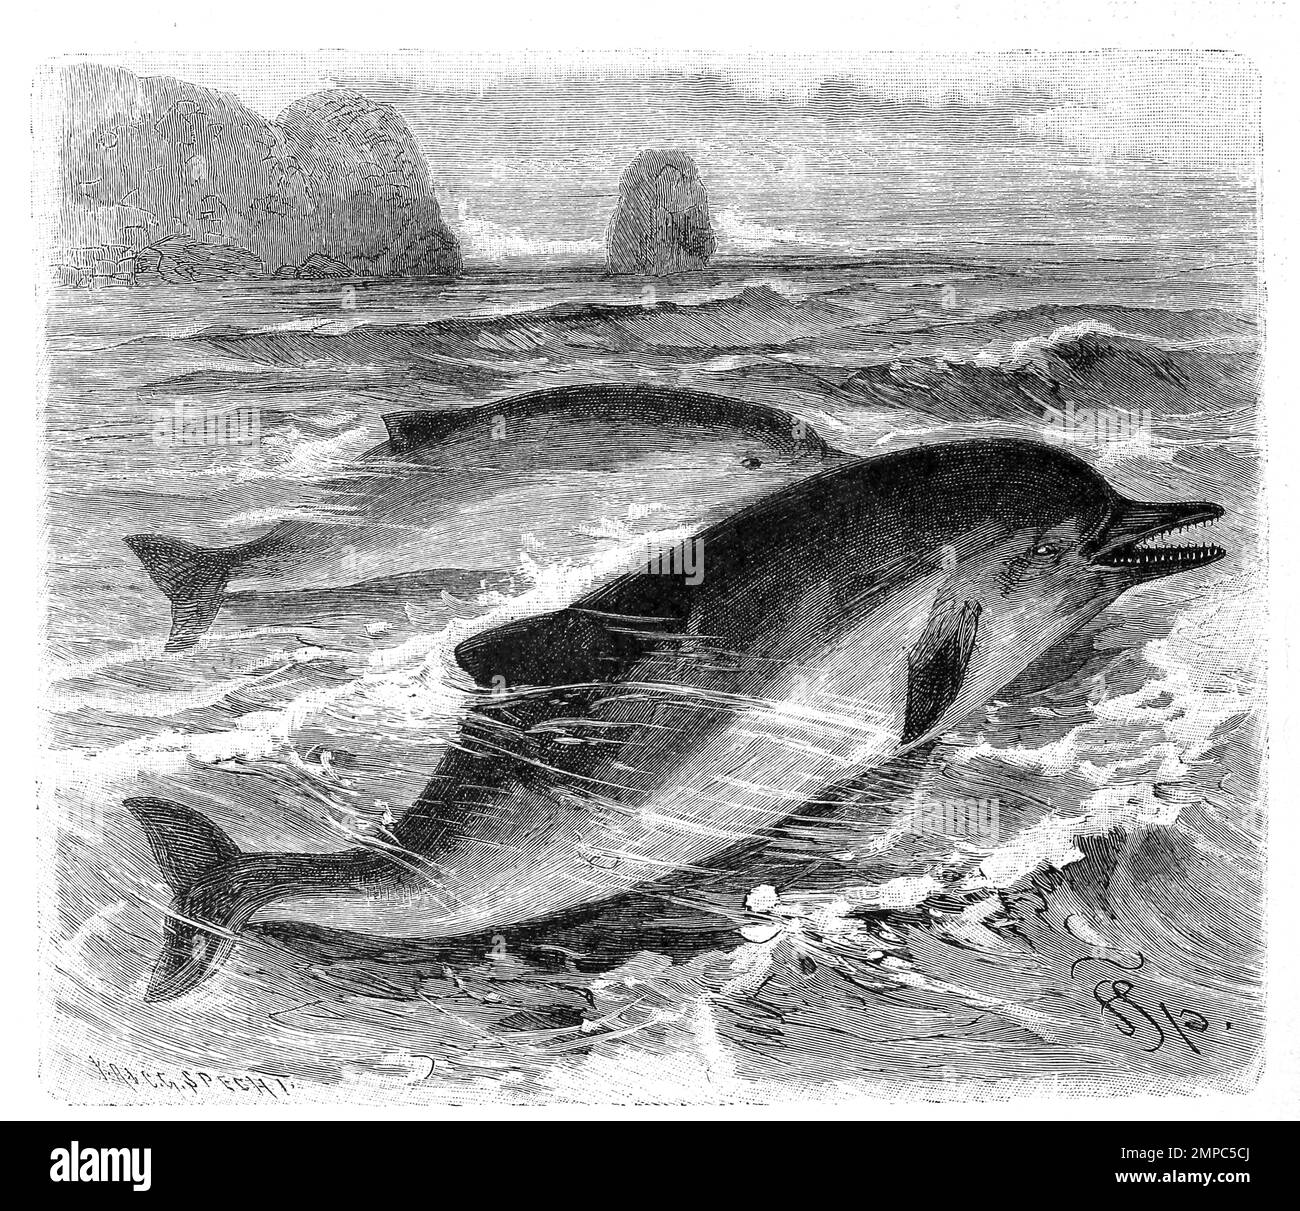 Gemeine Delfin, Delphinus delphis, Gewöhnlicher Delfin, Historisch, digital restaurierte Reproduktion von einer Vorlage aus dem 18. Jahrhundert, Stock Photo